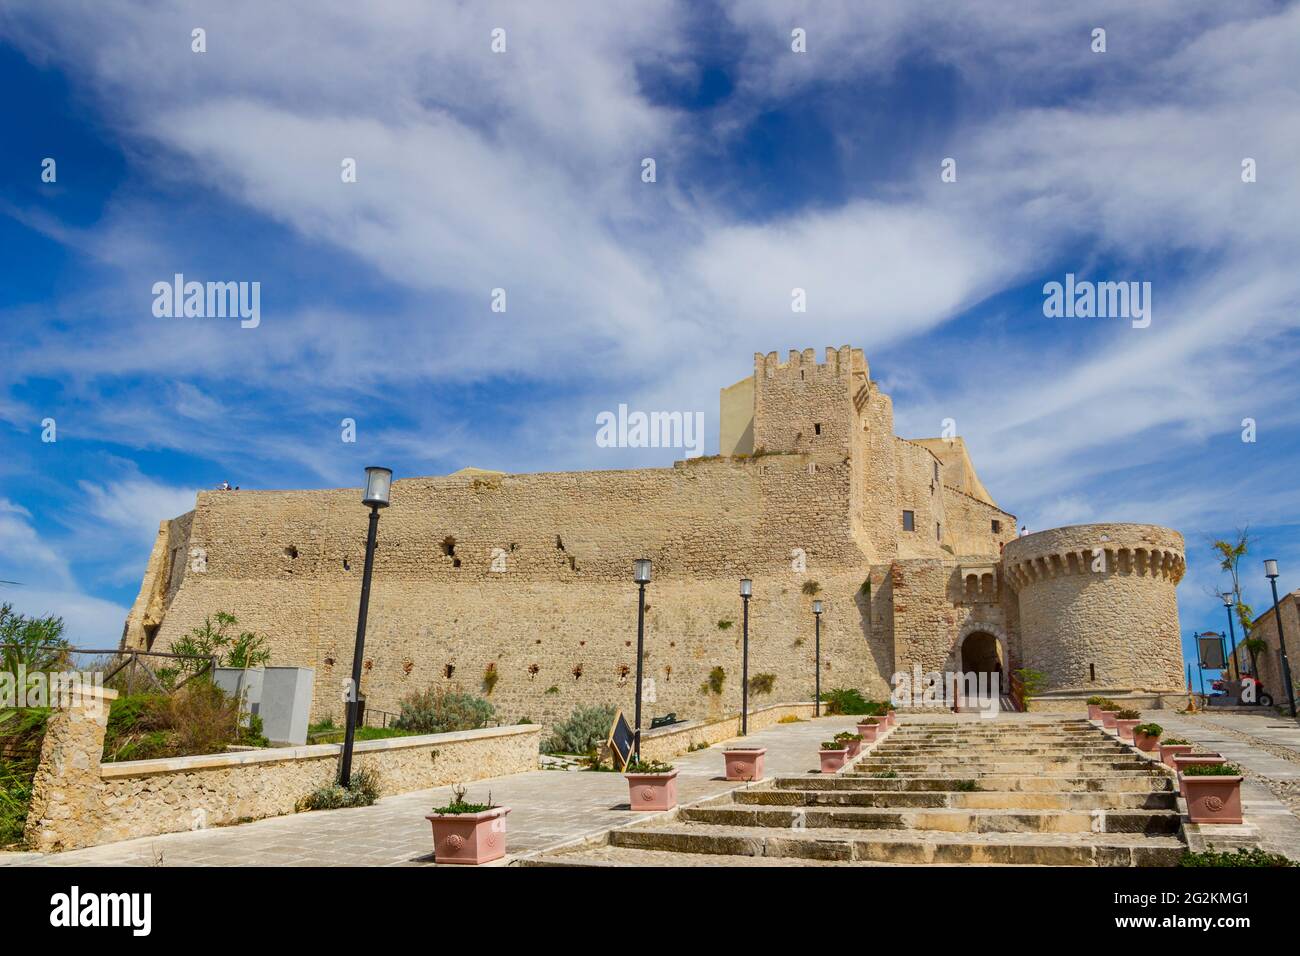 Mura della cittadella fortificata sull'isola di San Nicola, nelle isole Tremiti: Complesso fortificato dell'Abbazia di Santa Maria a Mare, Puglia, Italia. Foto Stock